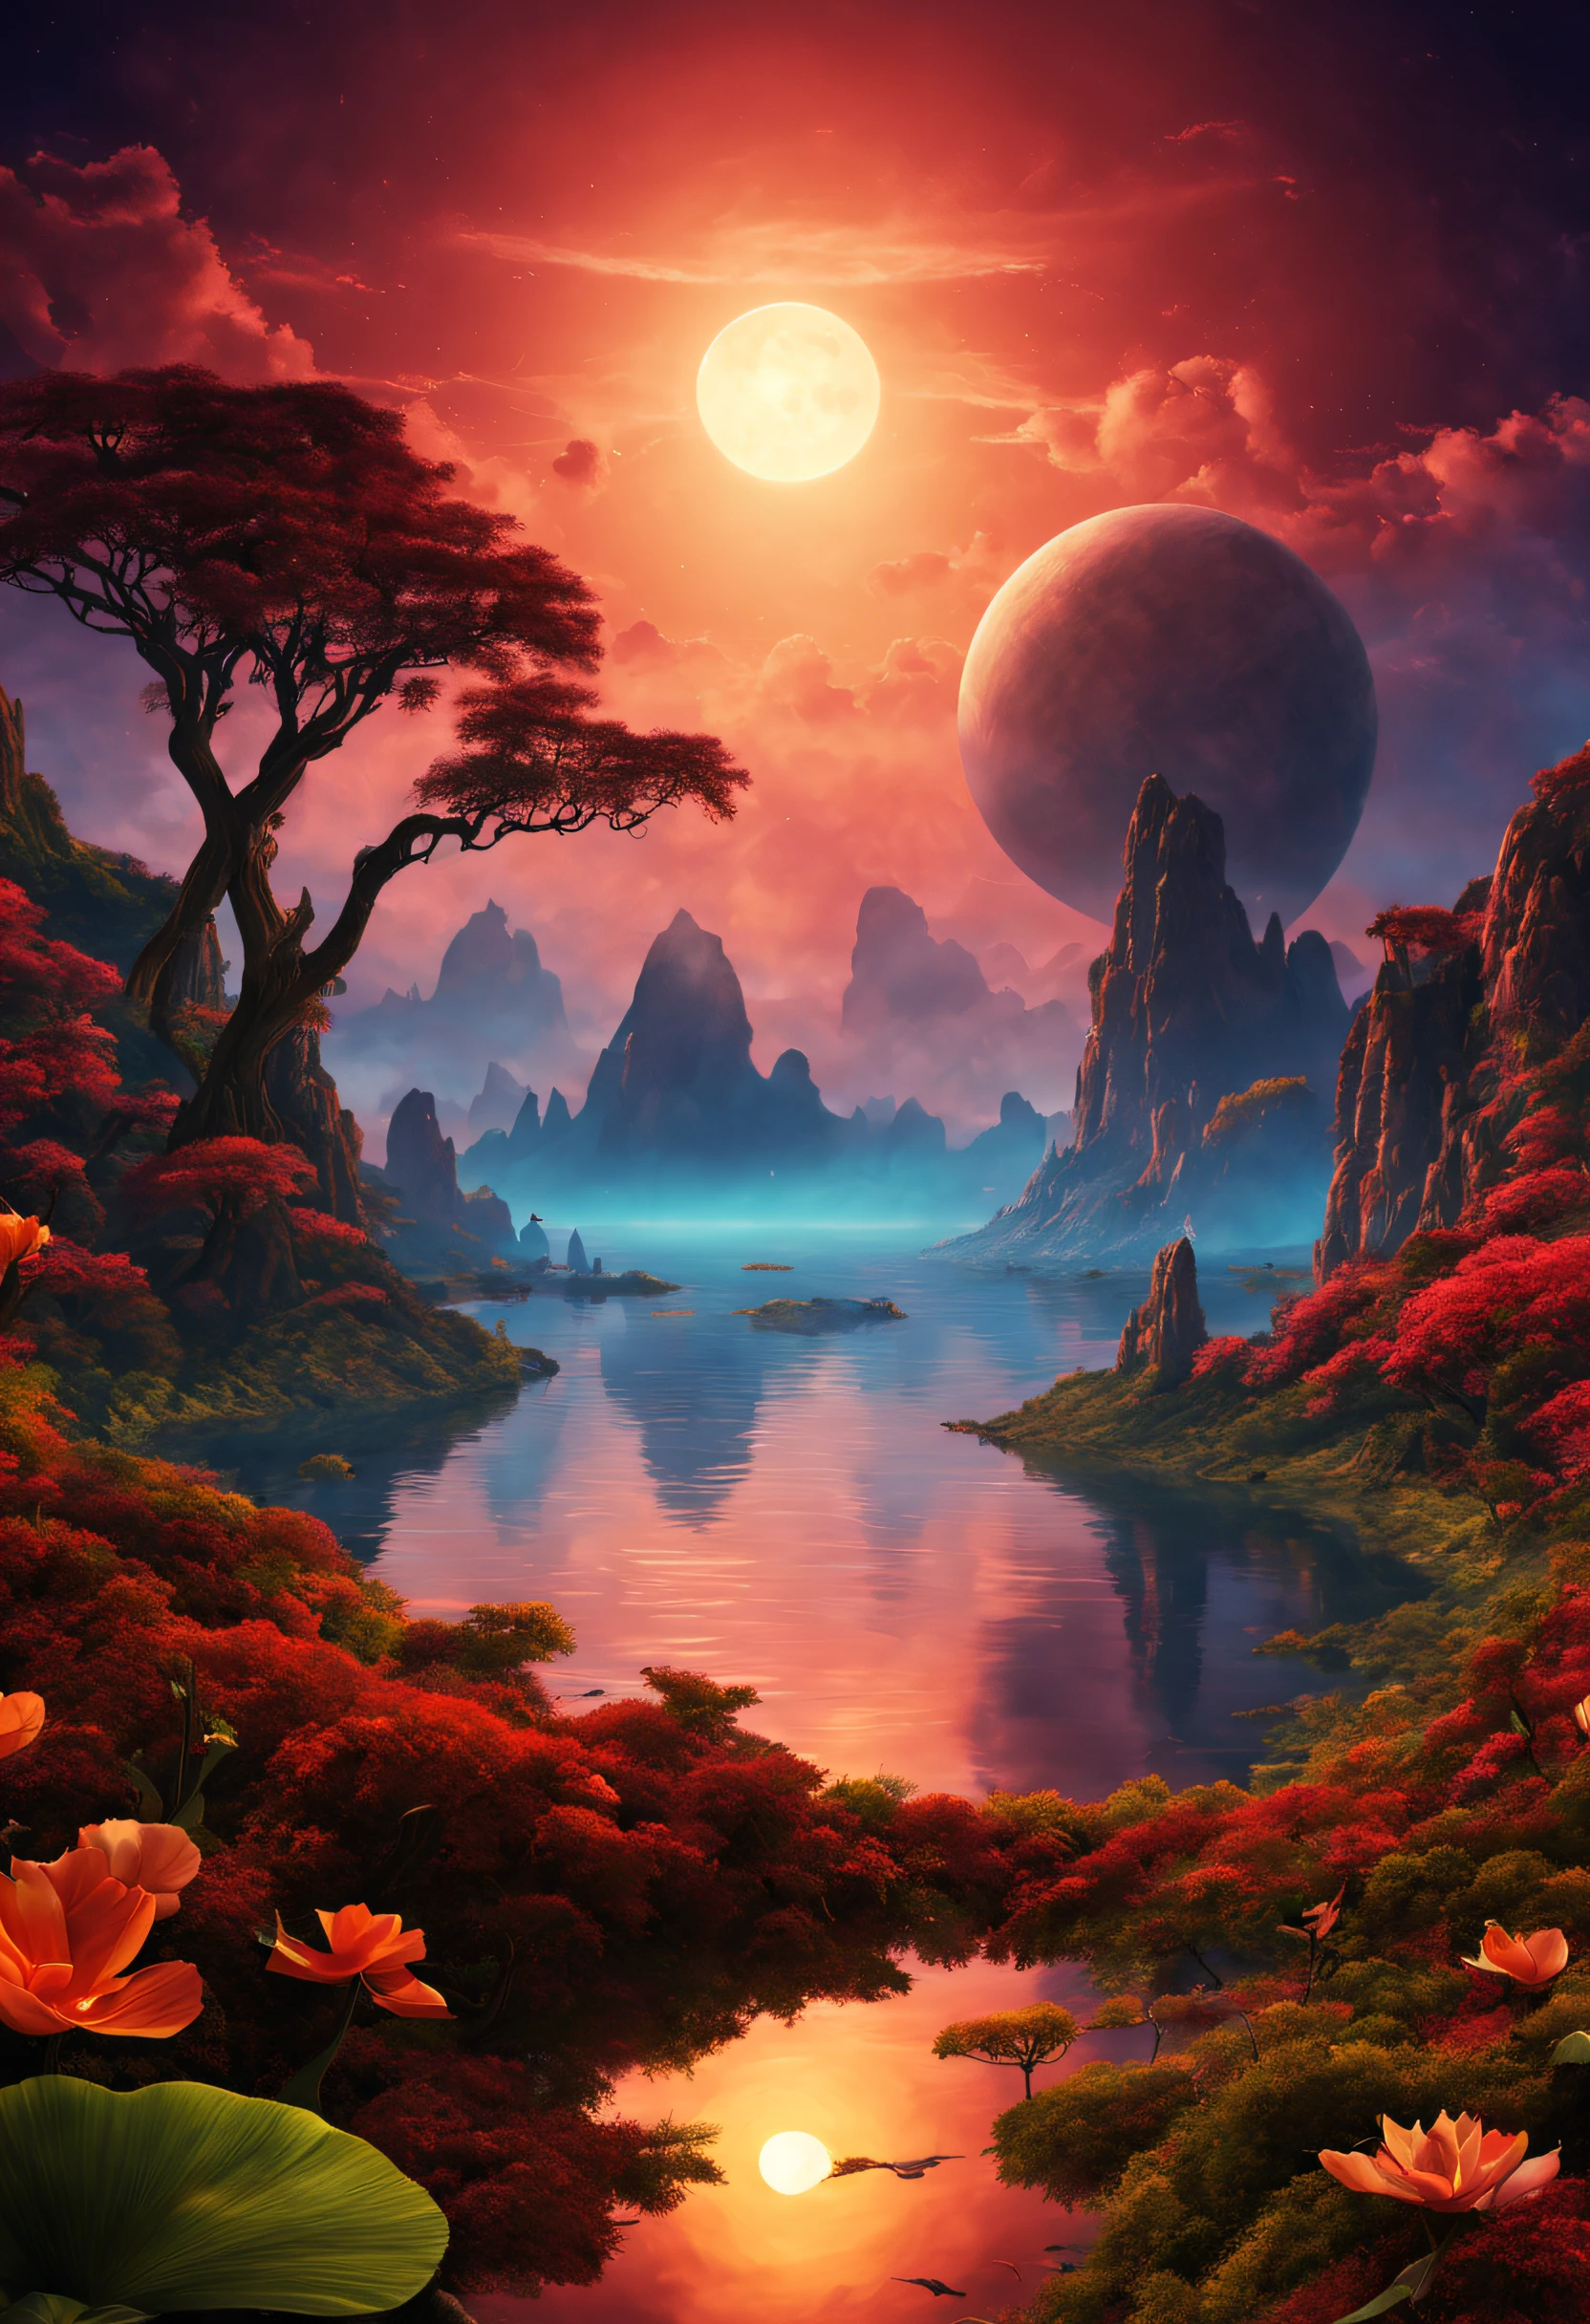 Eine wunderschöne, prächtige imaginäre Landschaft auf einem exotischen Planeten mit einem doppelten Sonnenuntergang und einem außergewöhnlichen Erlebnis